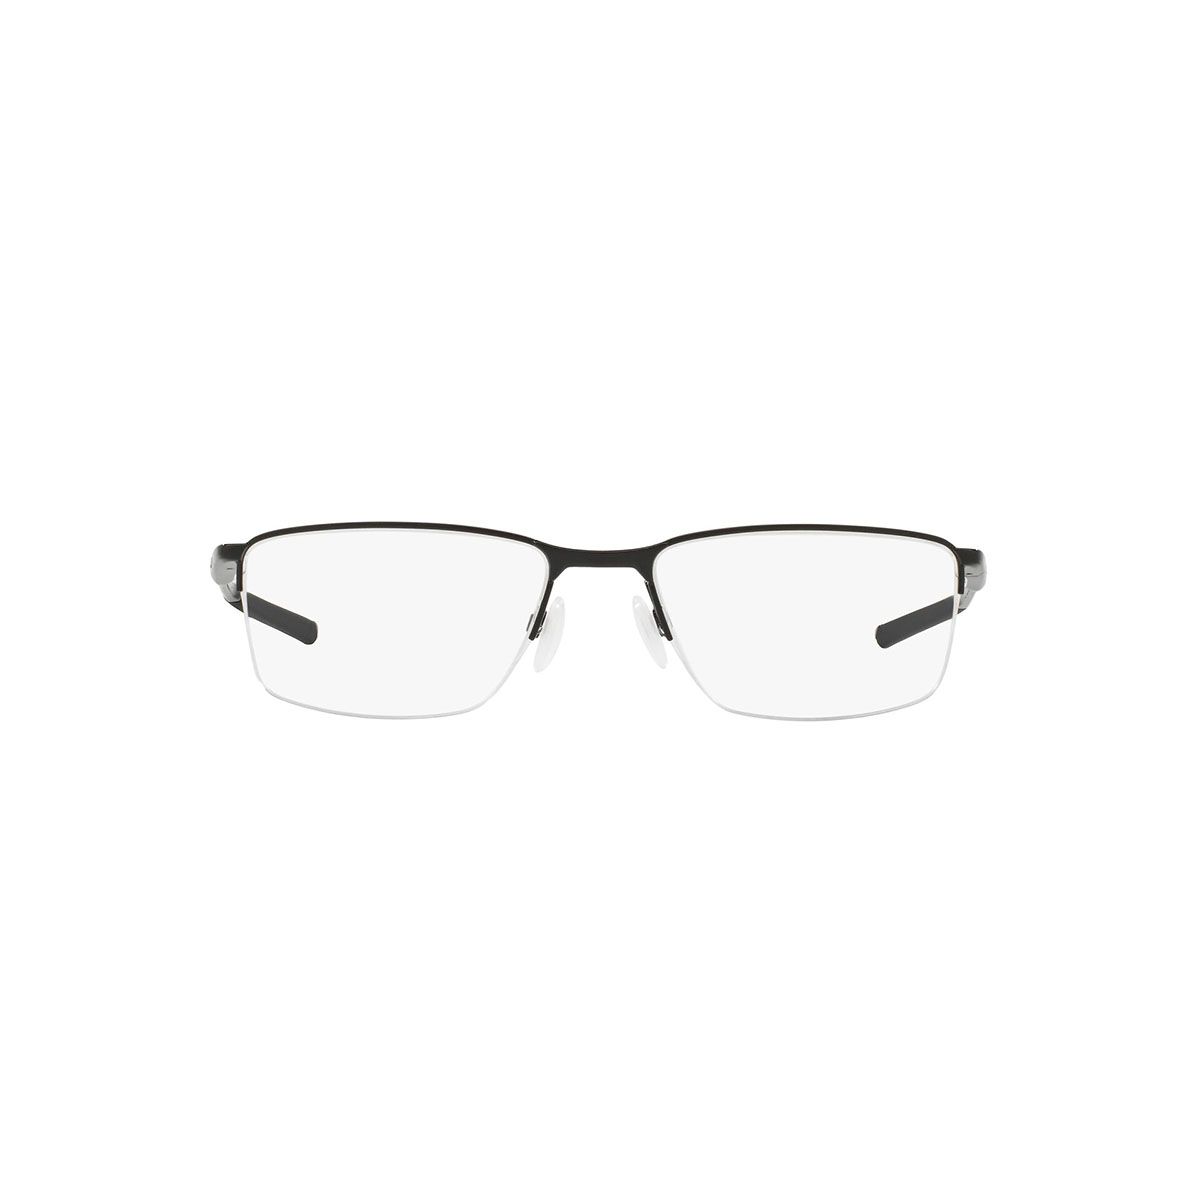 OX3218 Rectangle Eyeglasses 321801 - size  52